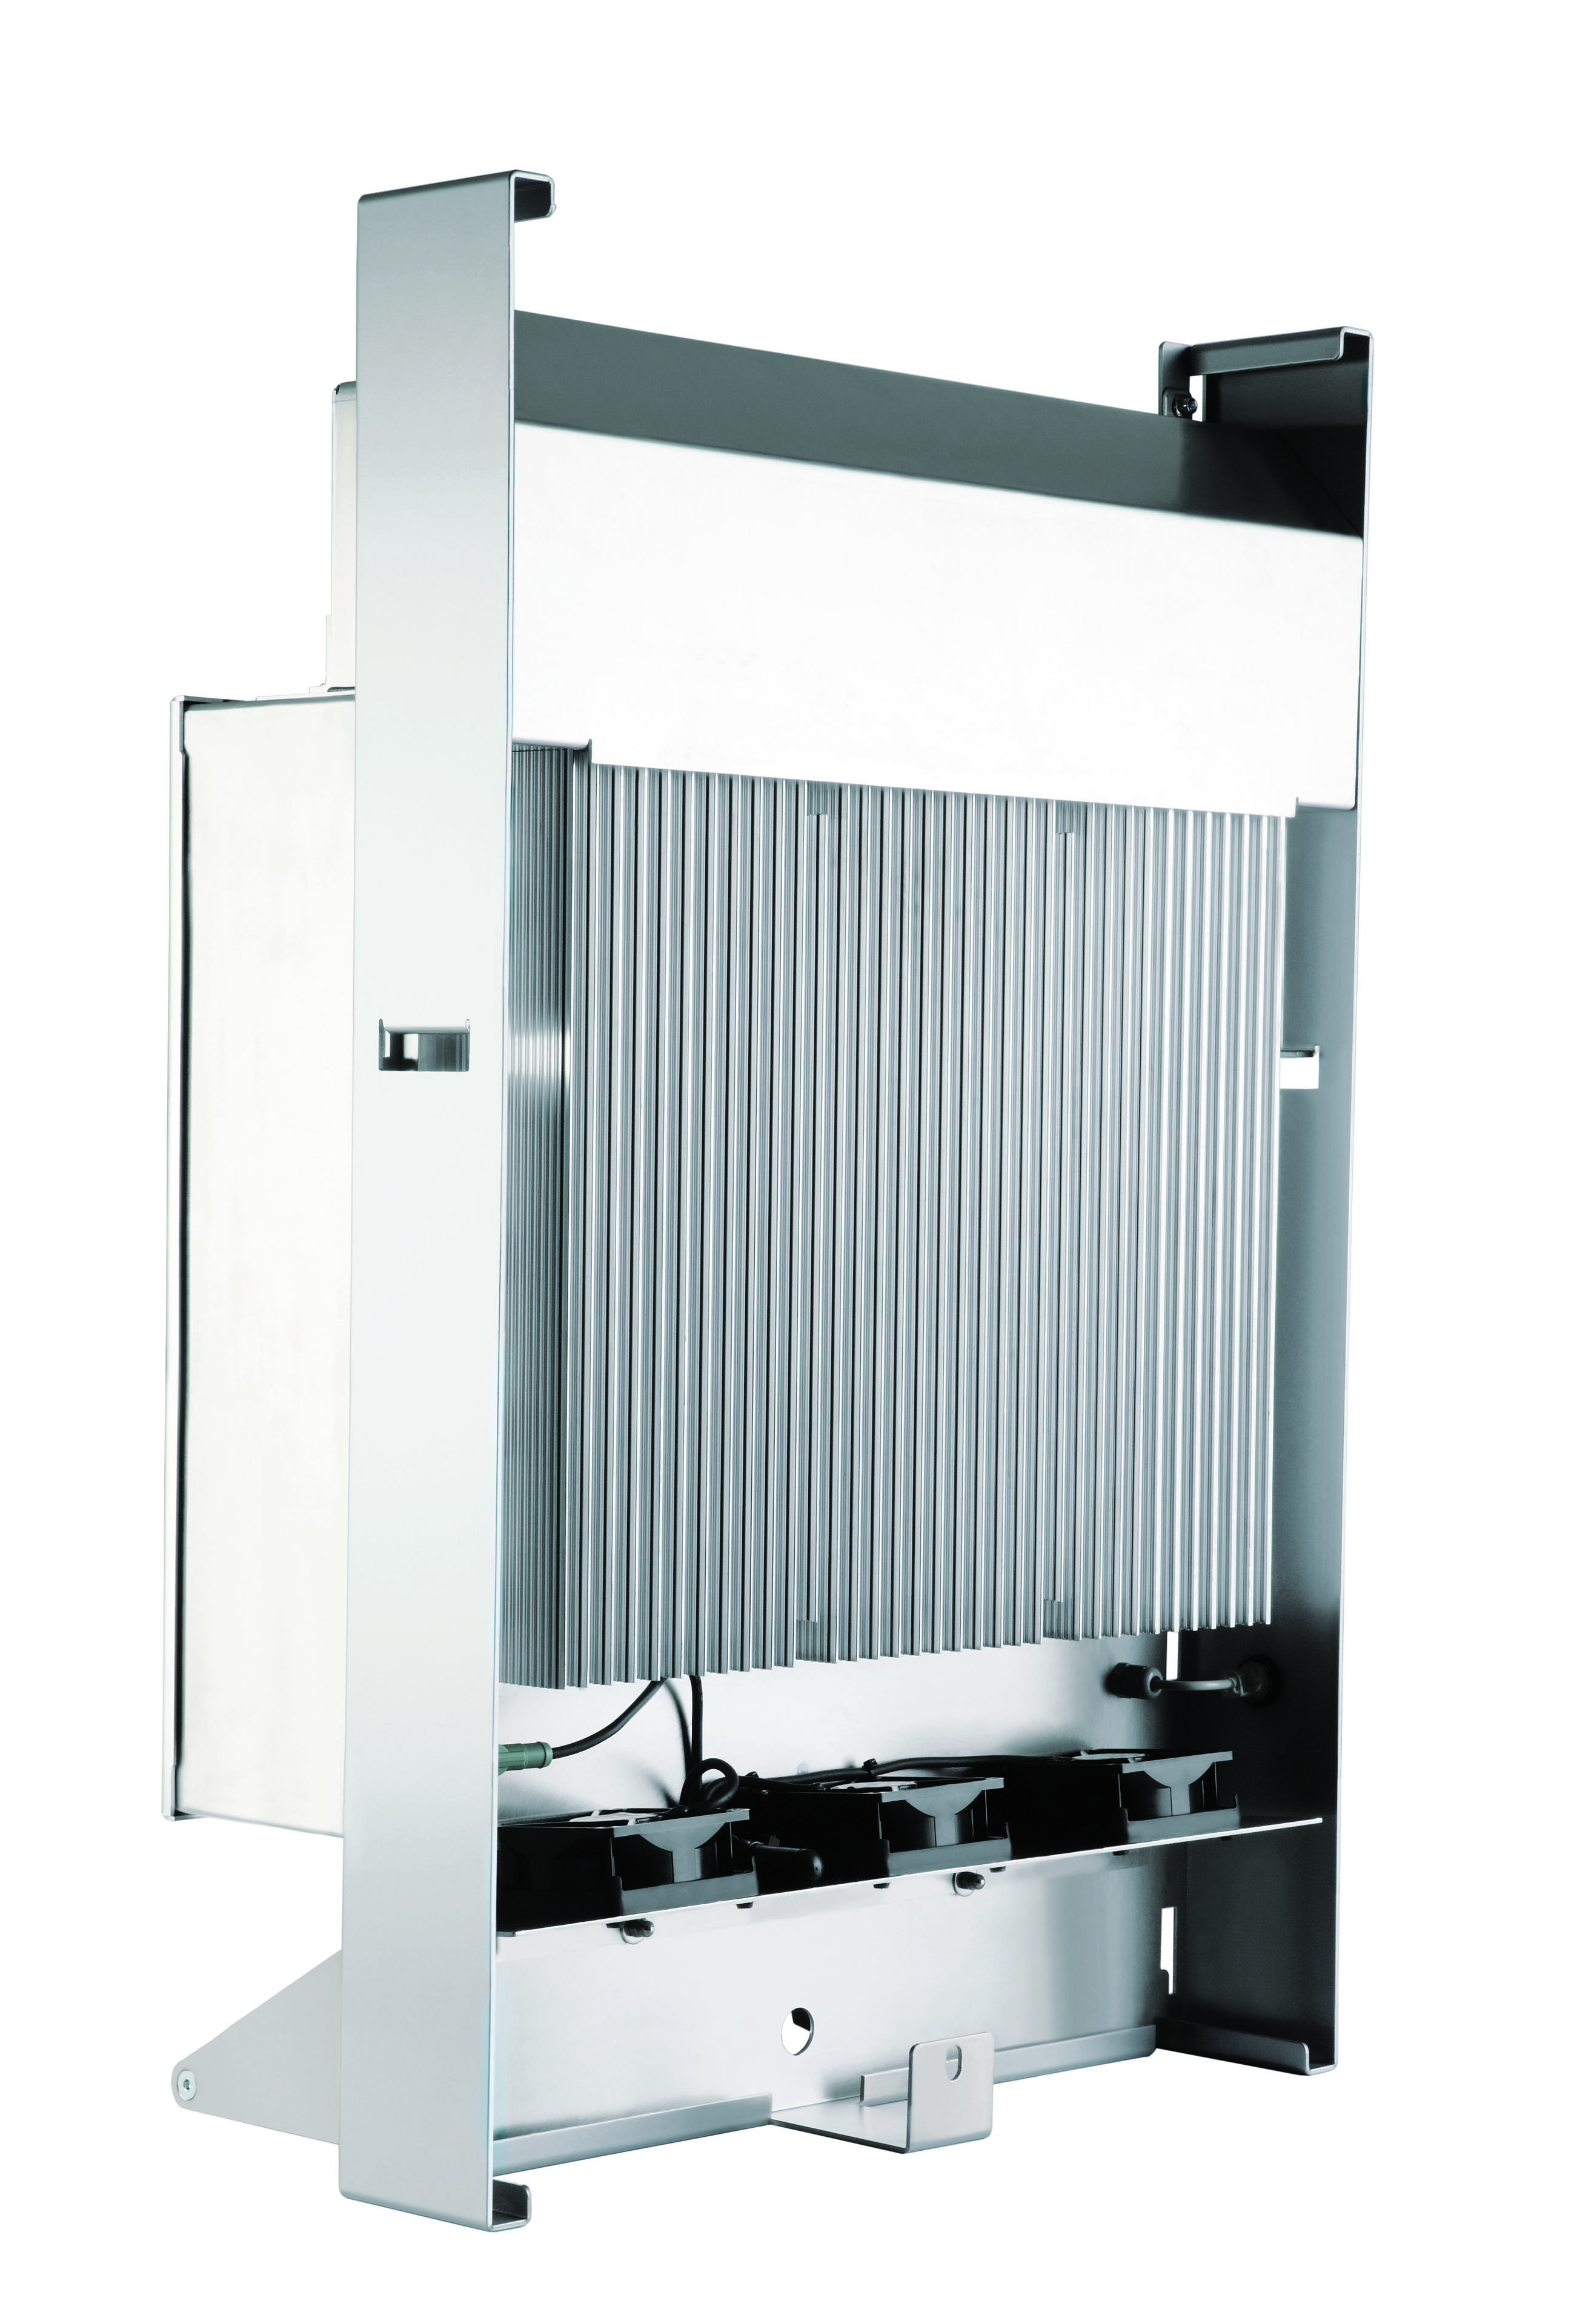 Řešení chlazení na zadní straně měniče - pasivní chladič podporovaný ventilátory spínanými v teplotních špičkách